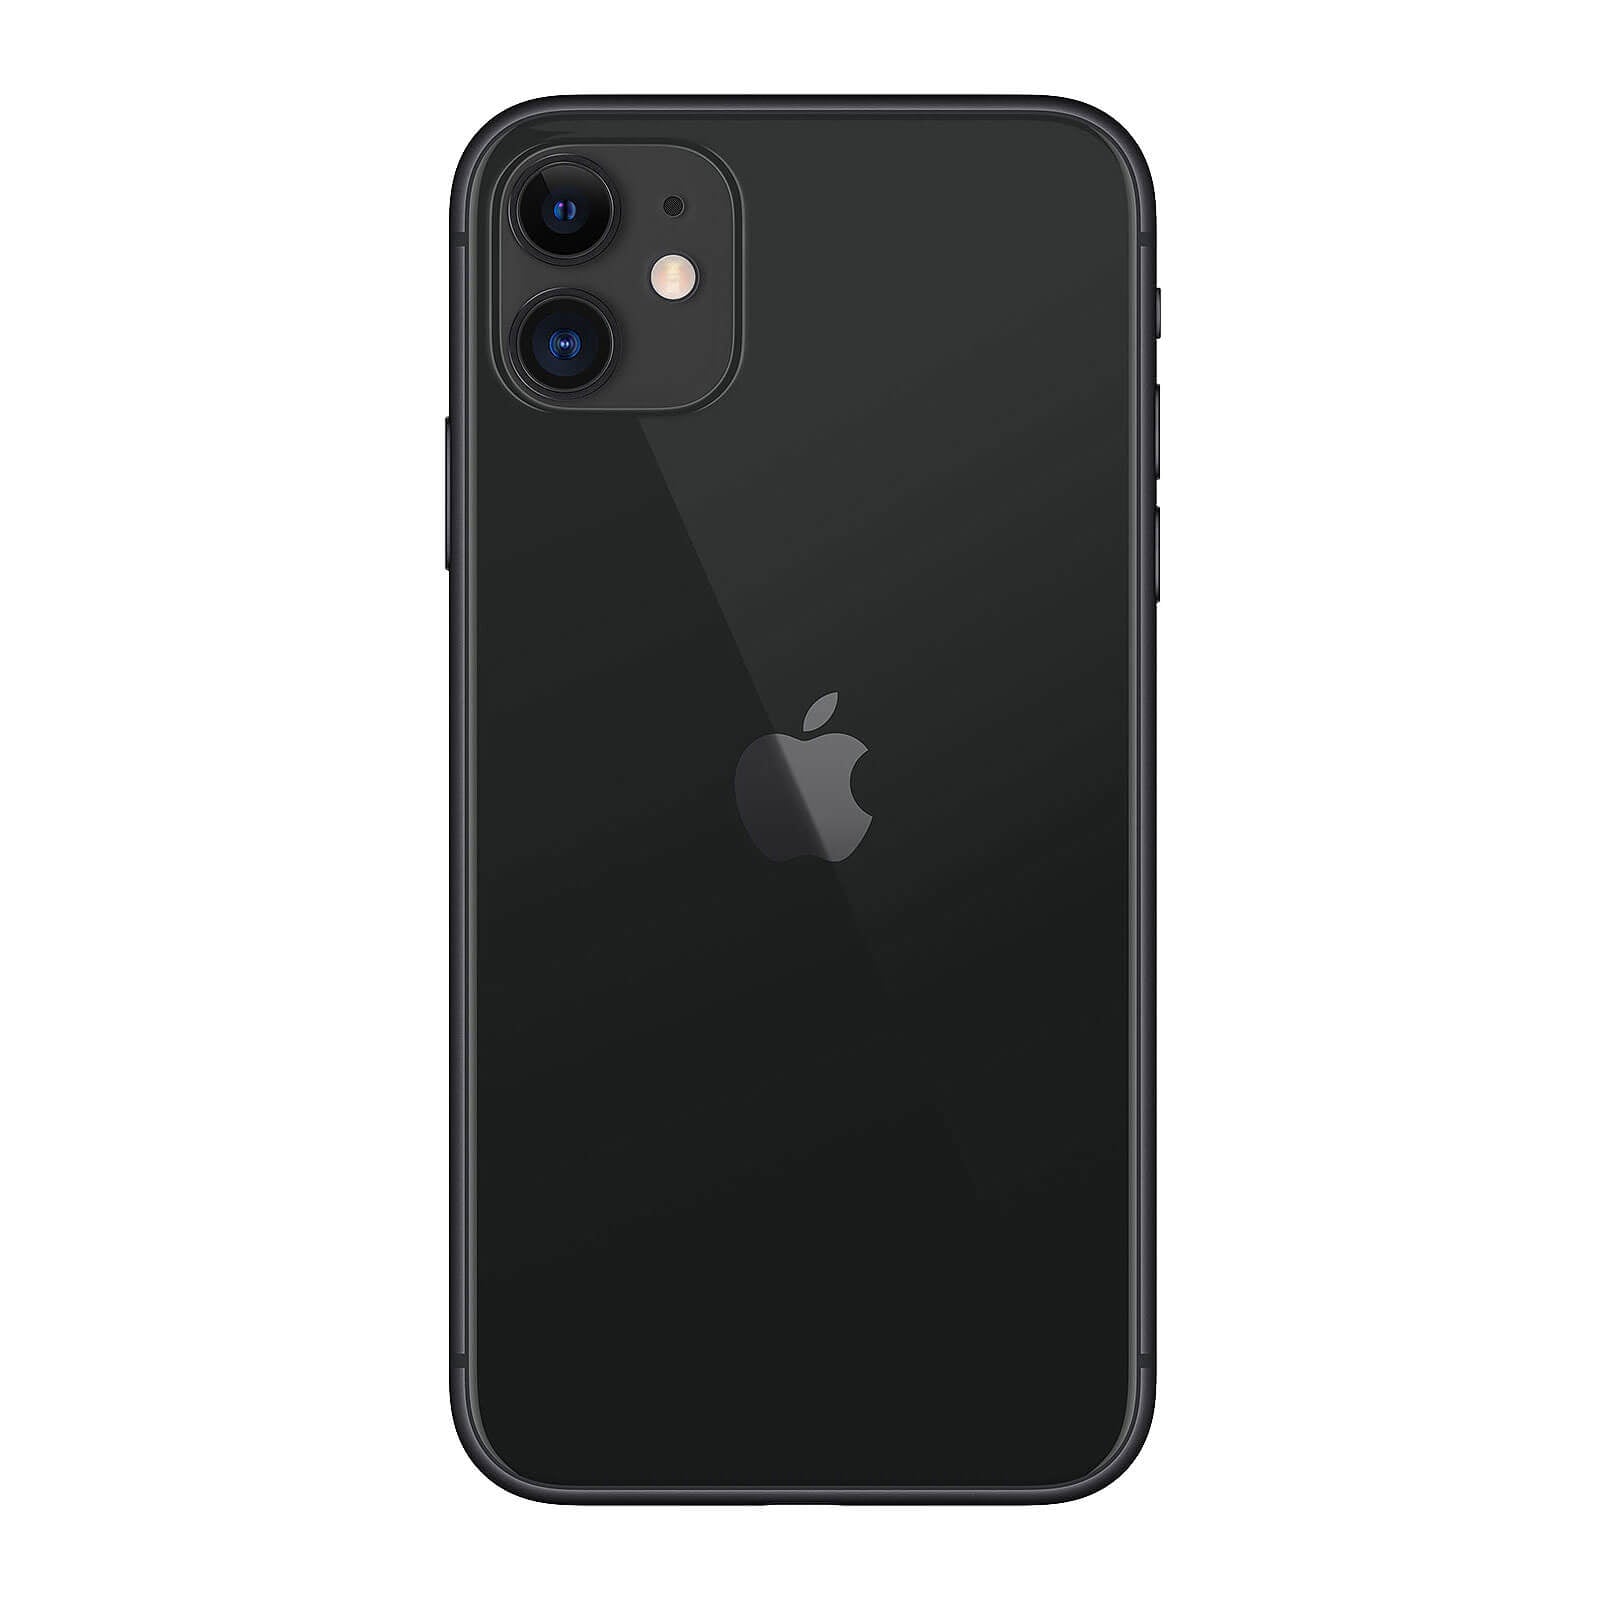 Apple iPhone 11 256GB Black Good - Unlocked